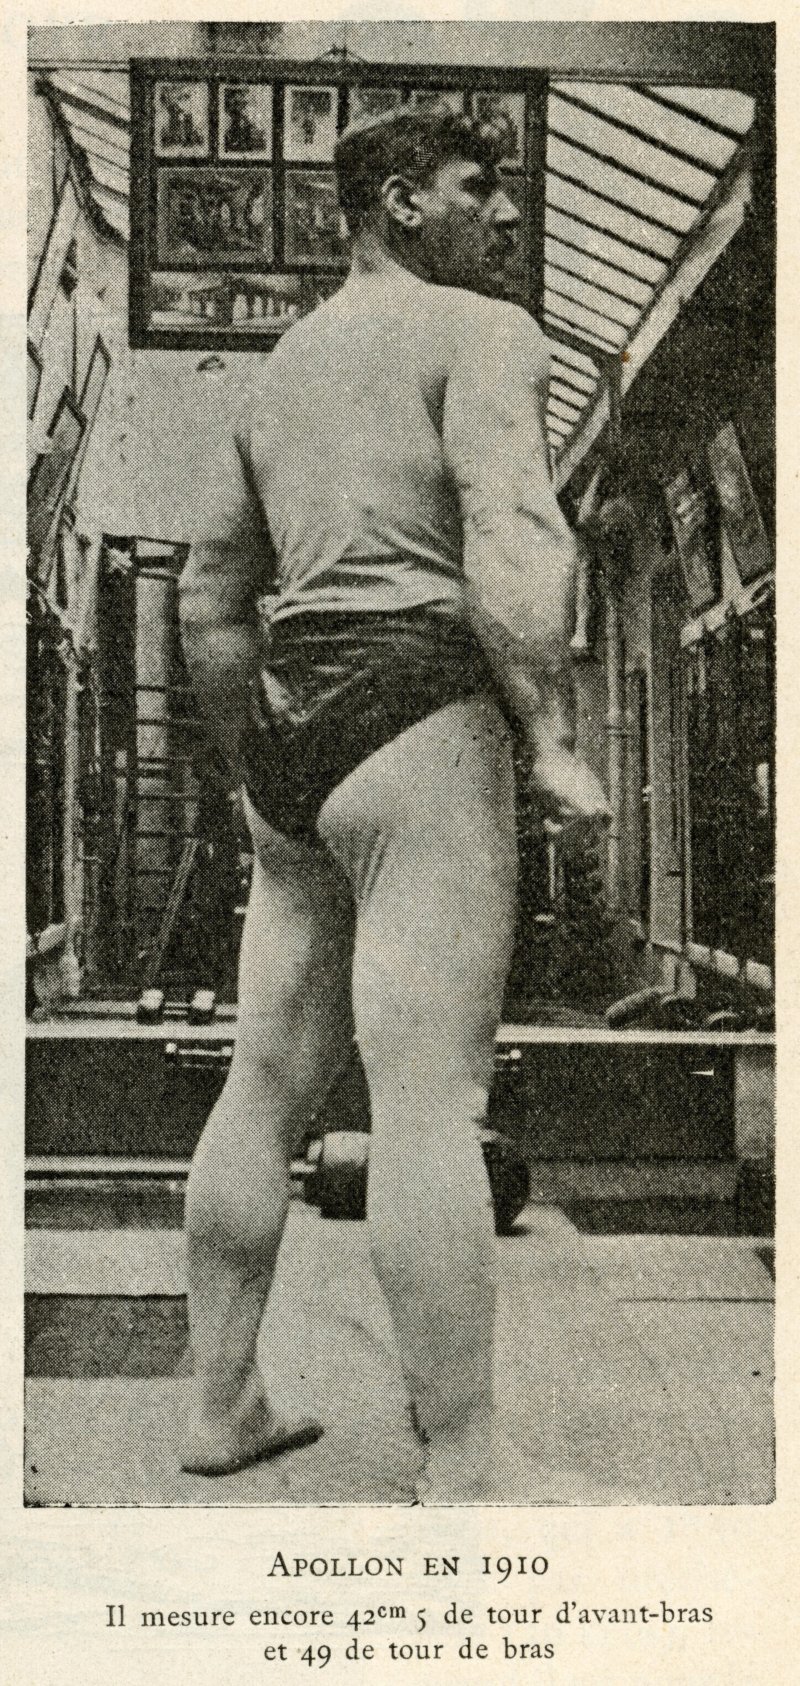 Apollon in 1910